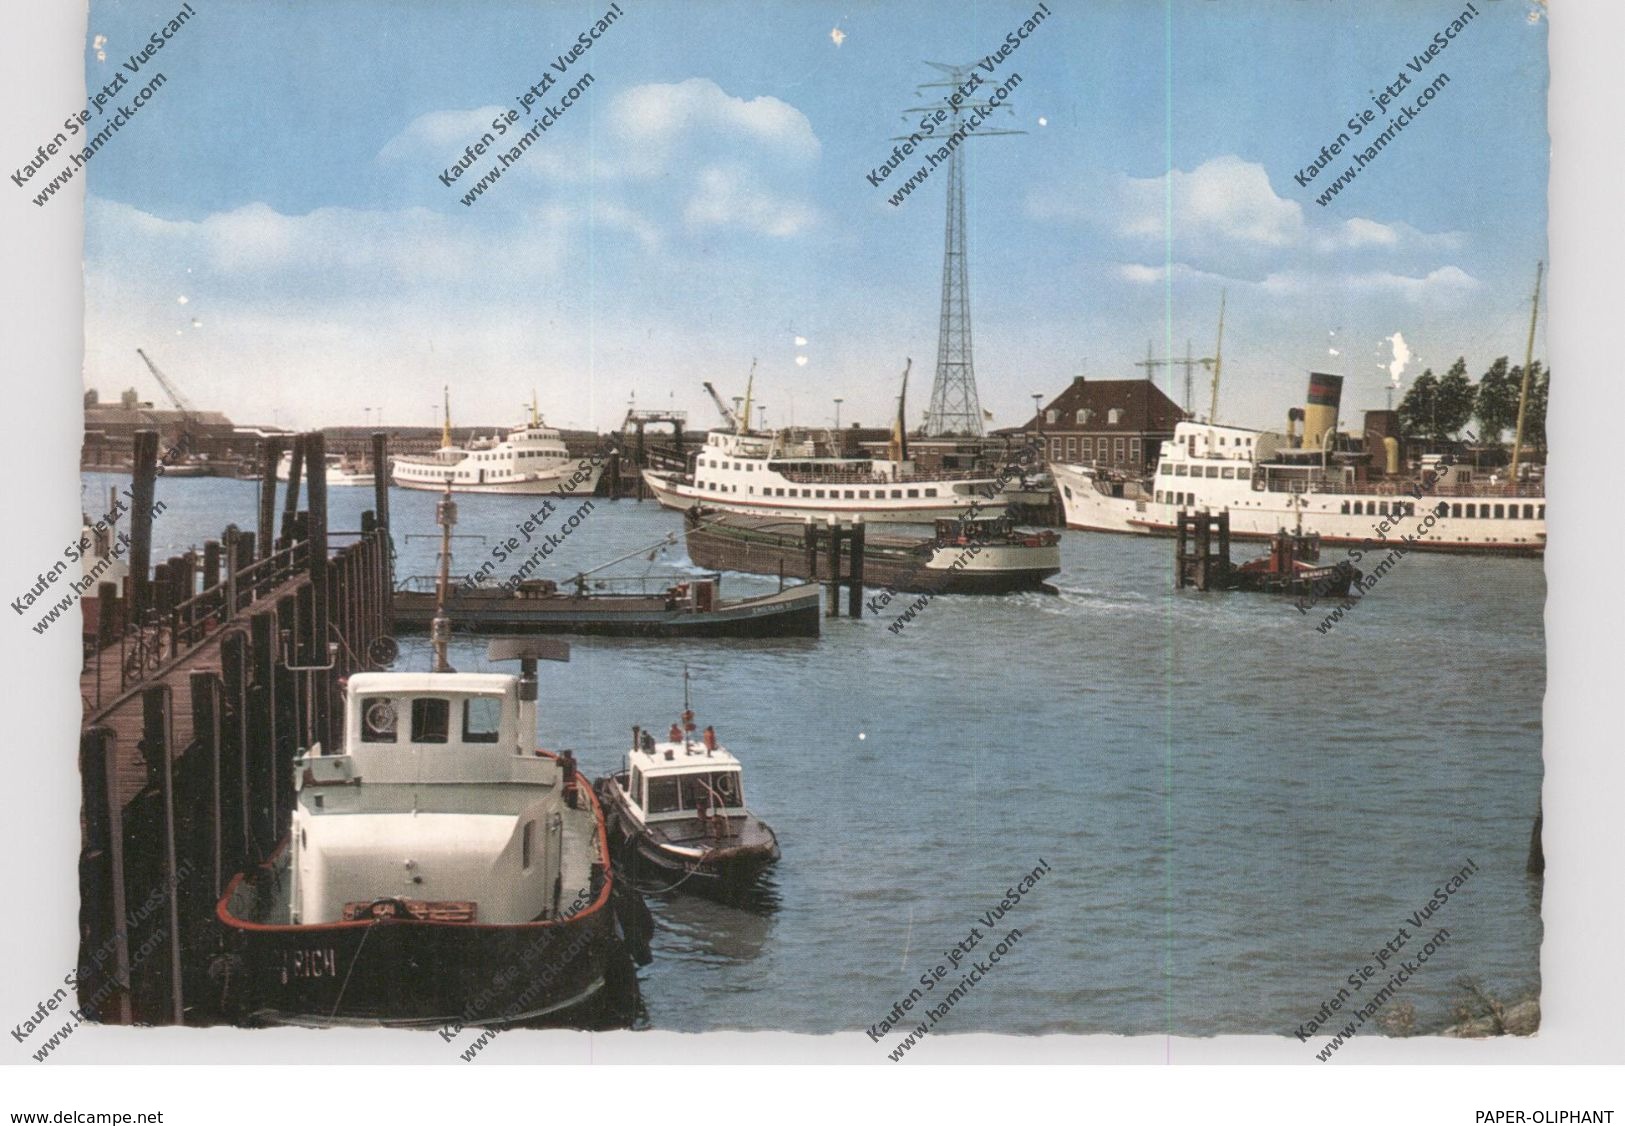 2970 EMDEN, Aussenhafen, 1969 - Emden